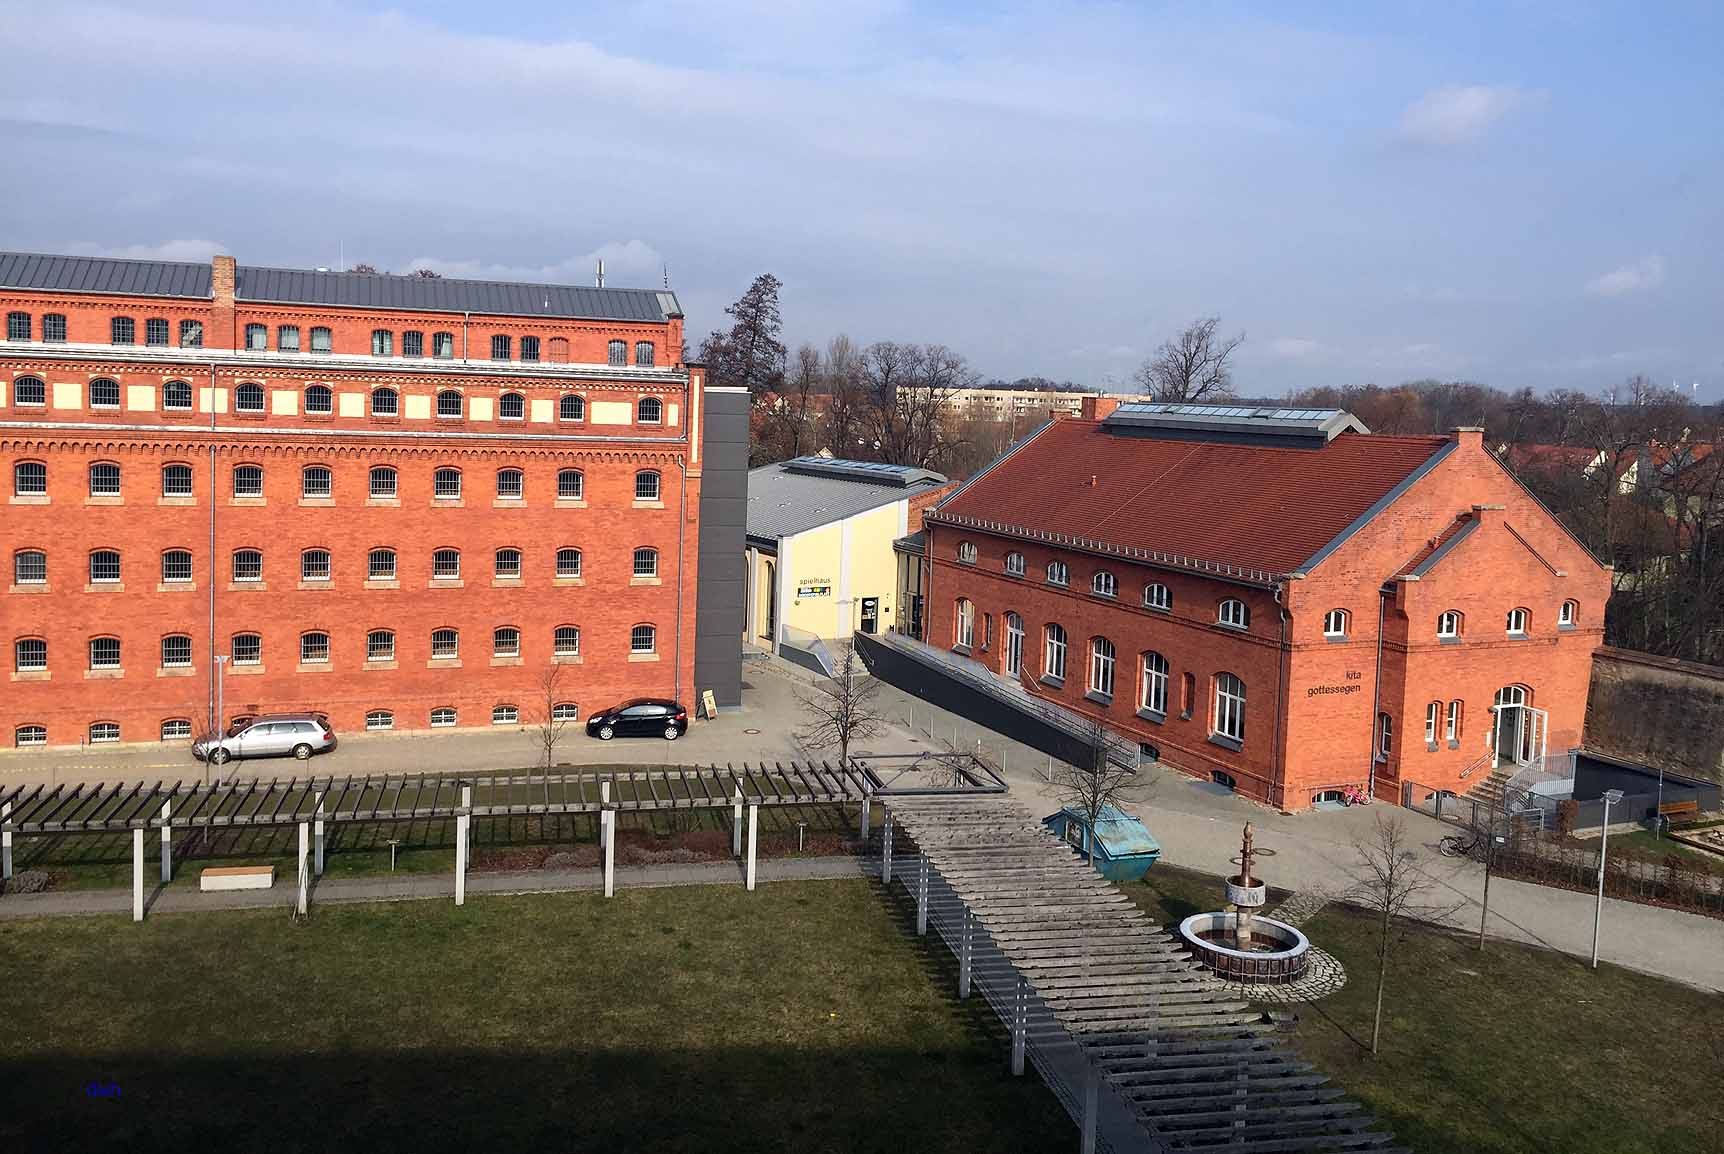 Stadtrundgang Luckau, ehemaliges Gefängnis, heute Museum, Archiv und Kulturzentrum, Foto: D.Weirauch